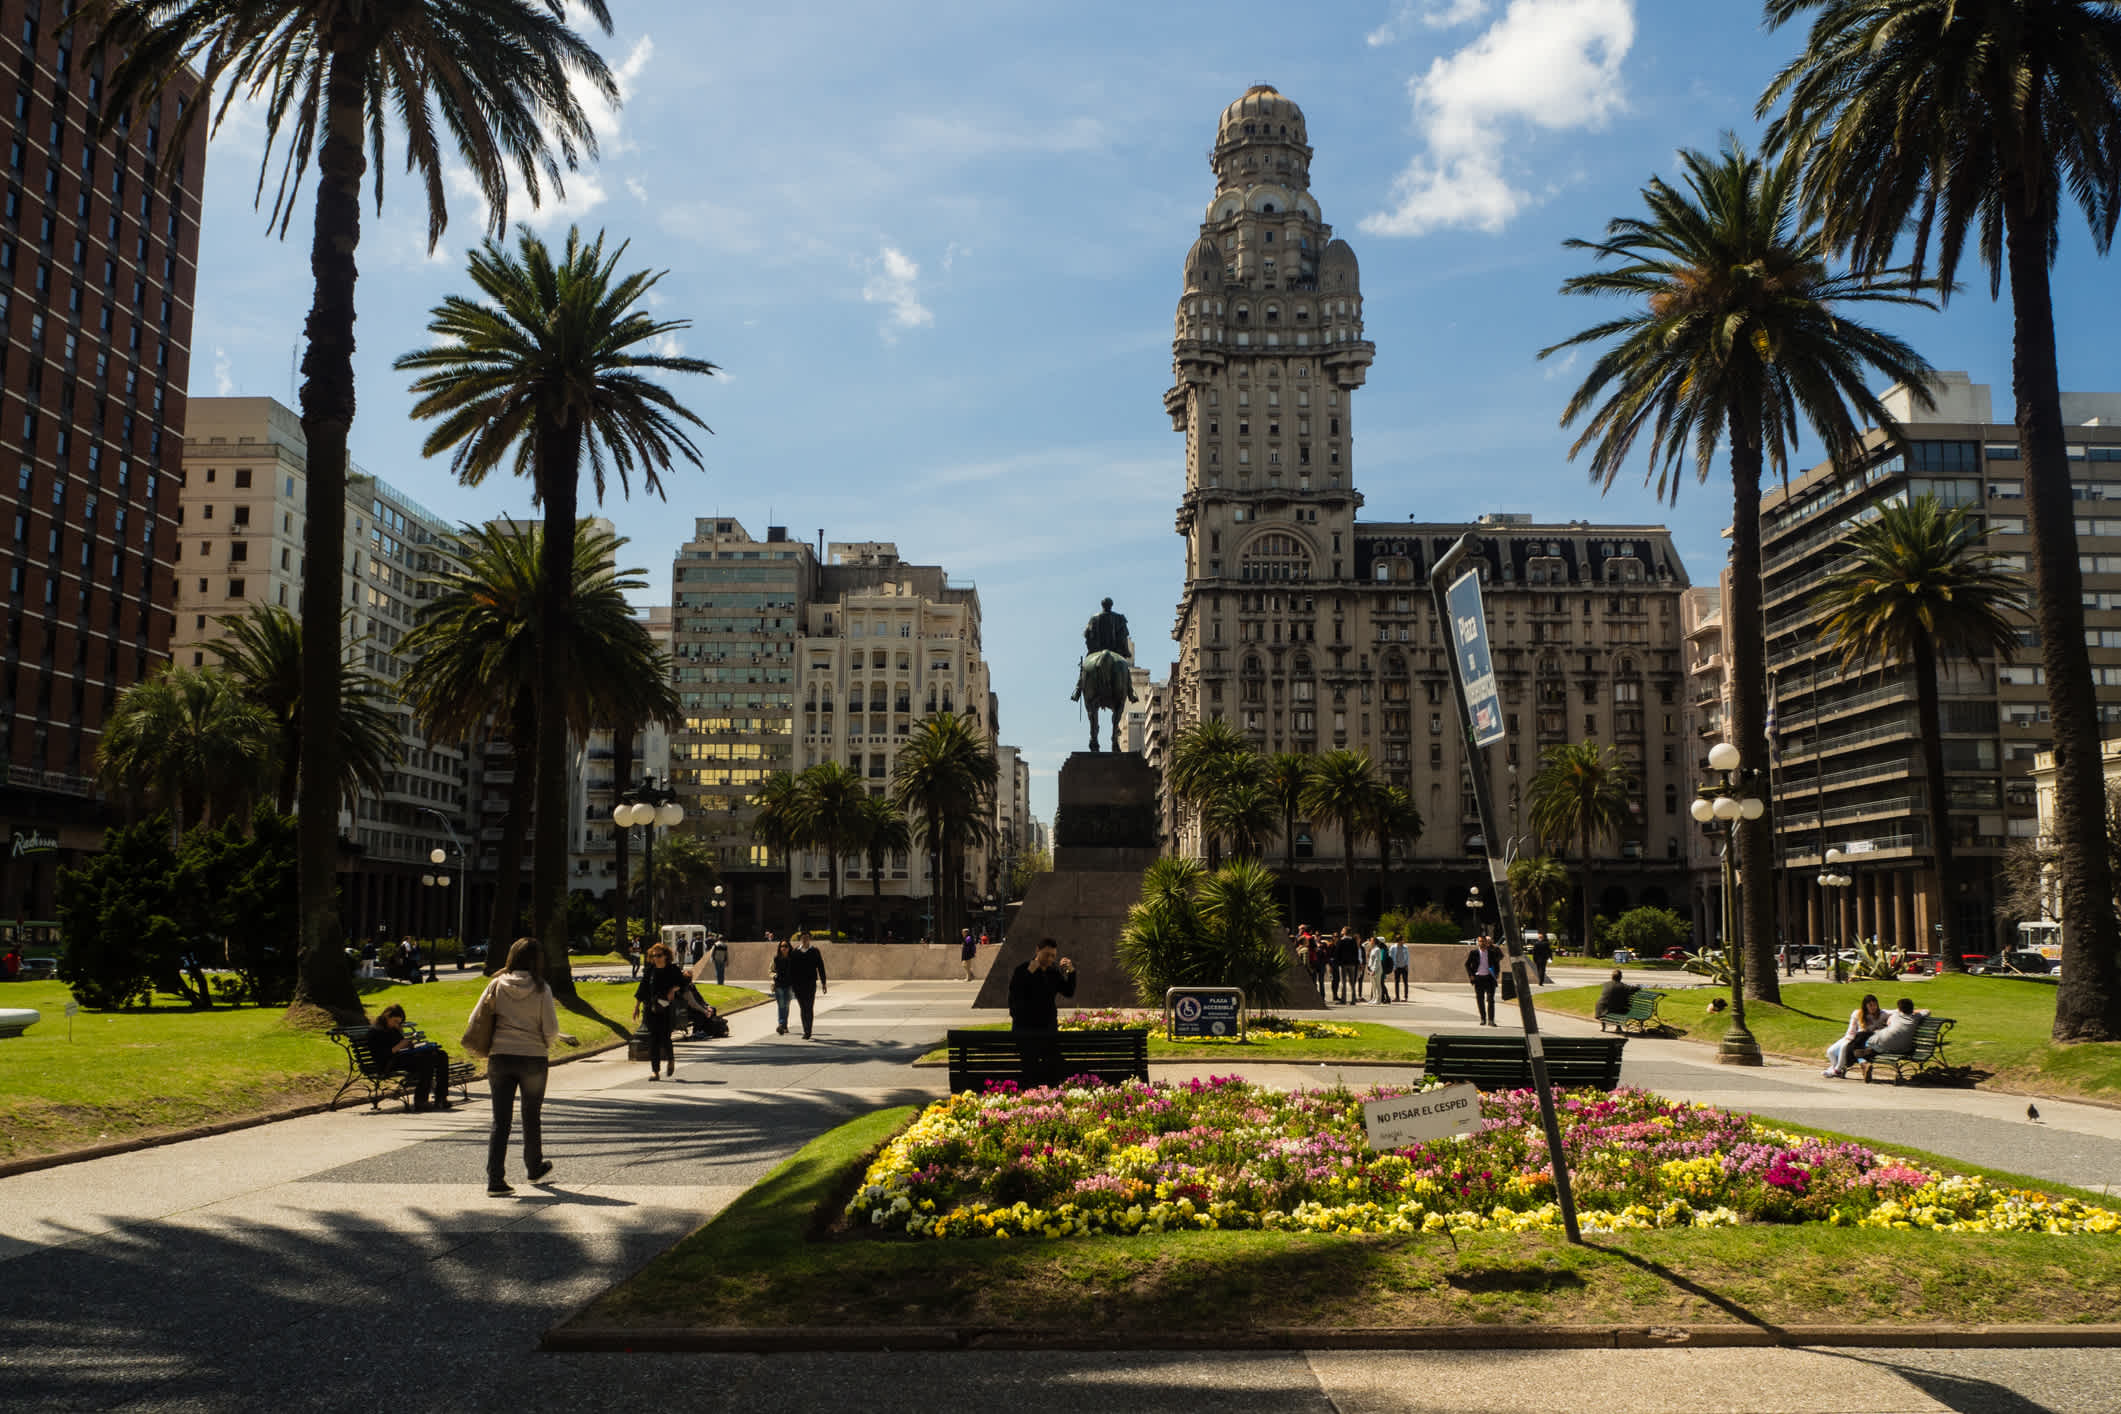 Vue de la place principale avec le Palais Salvo, à Montevideo, en Uruguay

